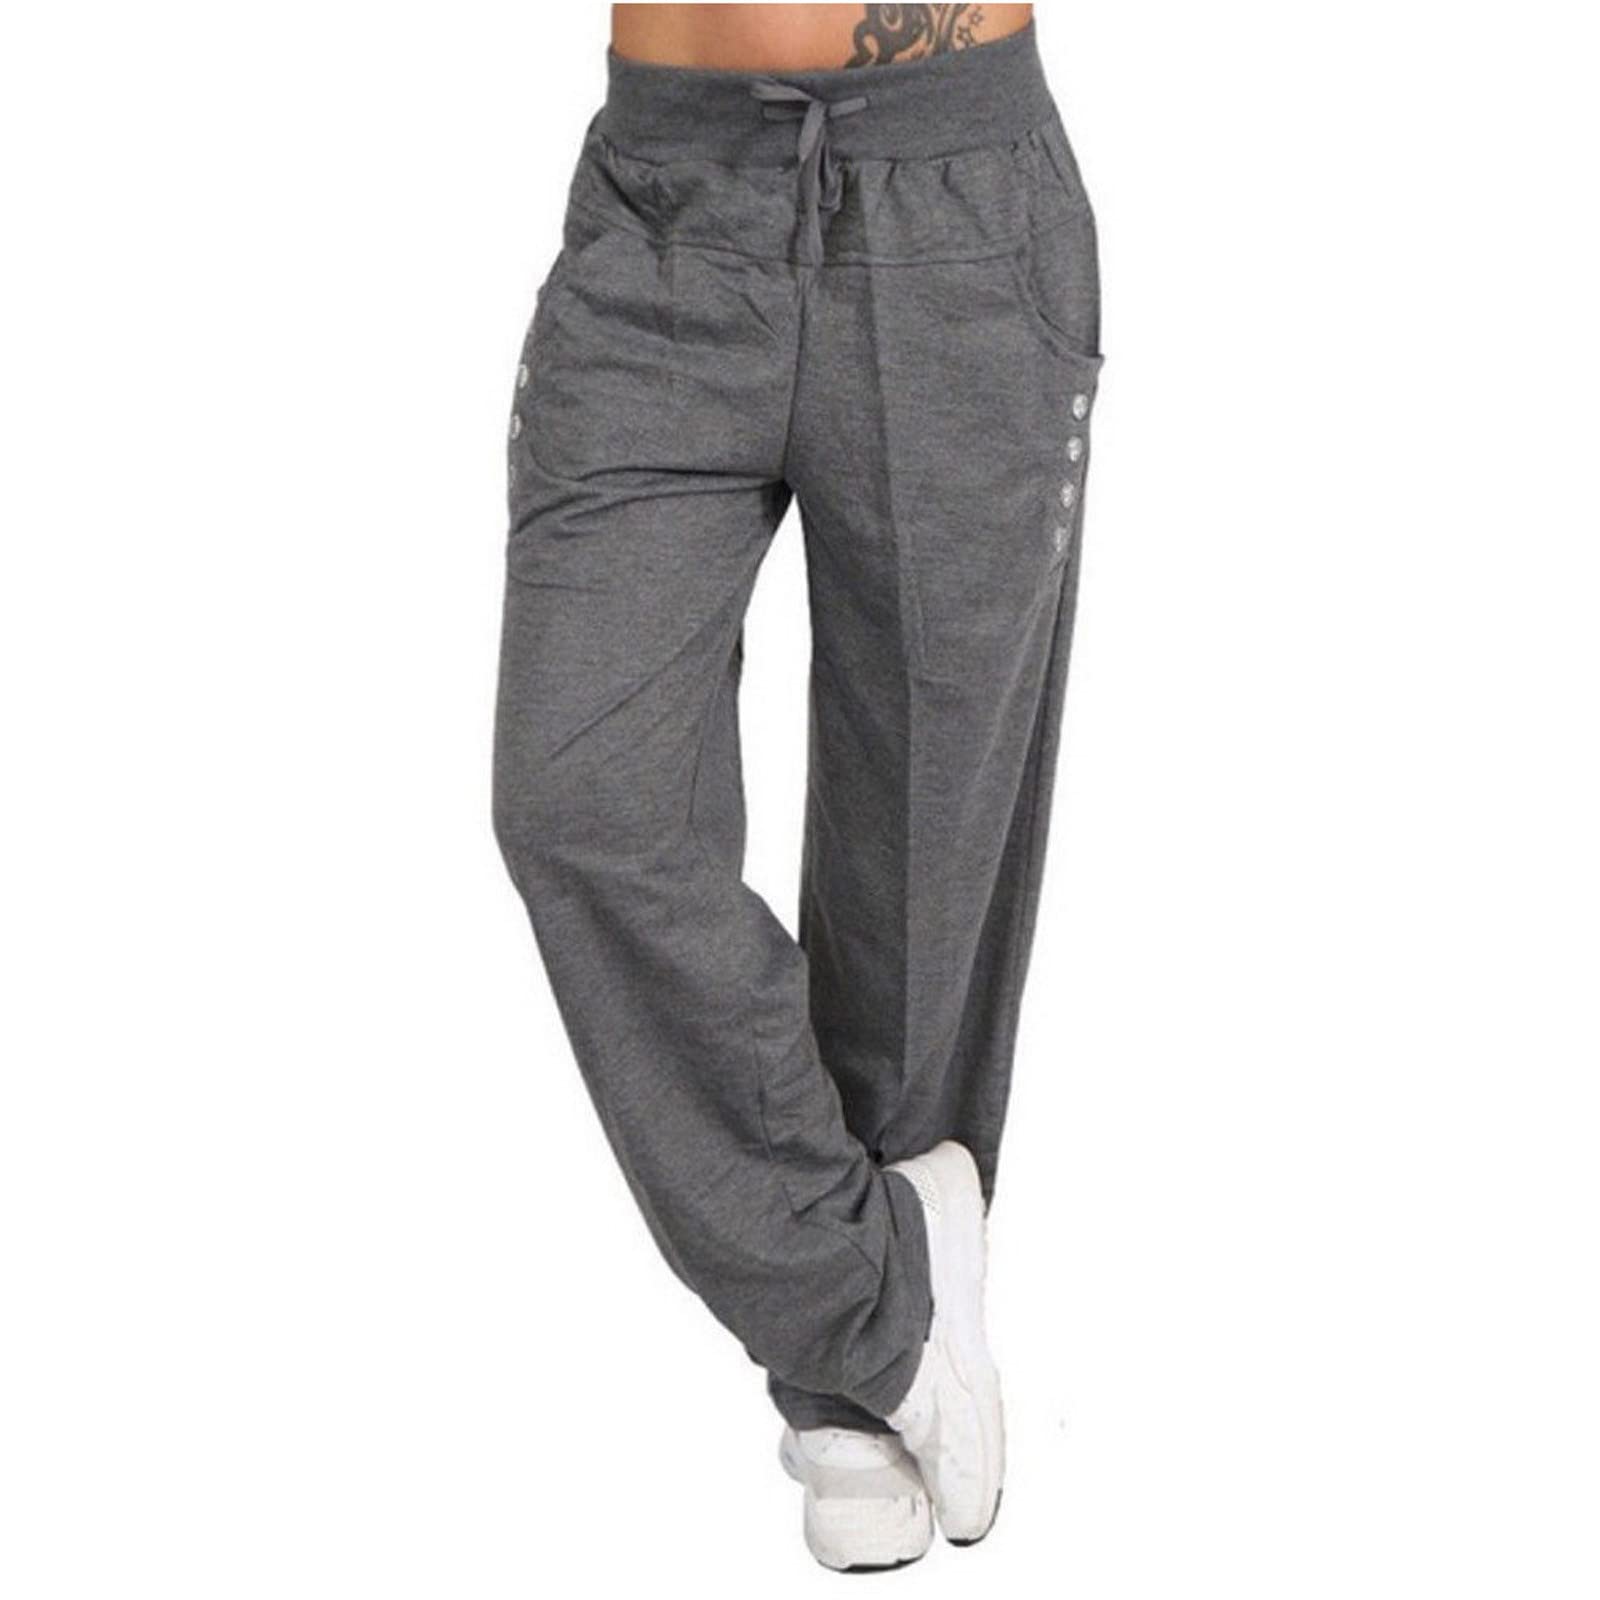 Yoga Cargo Pants